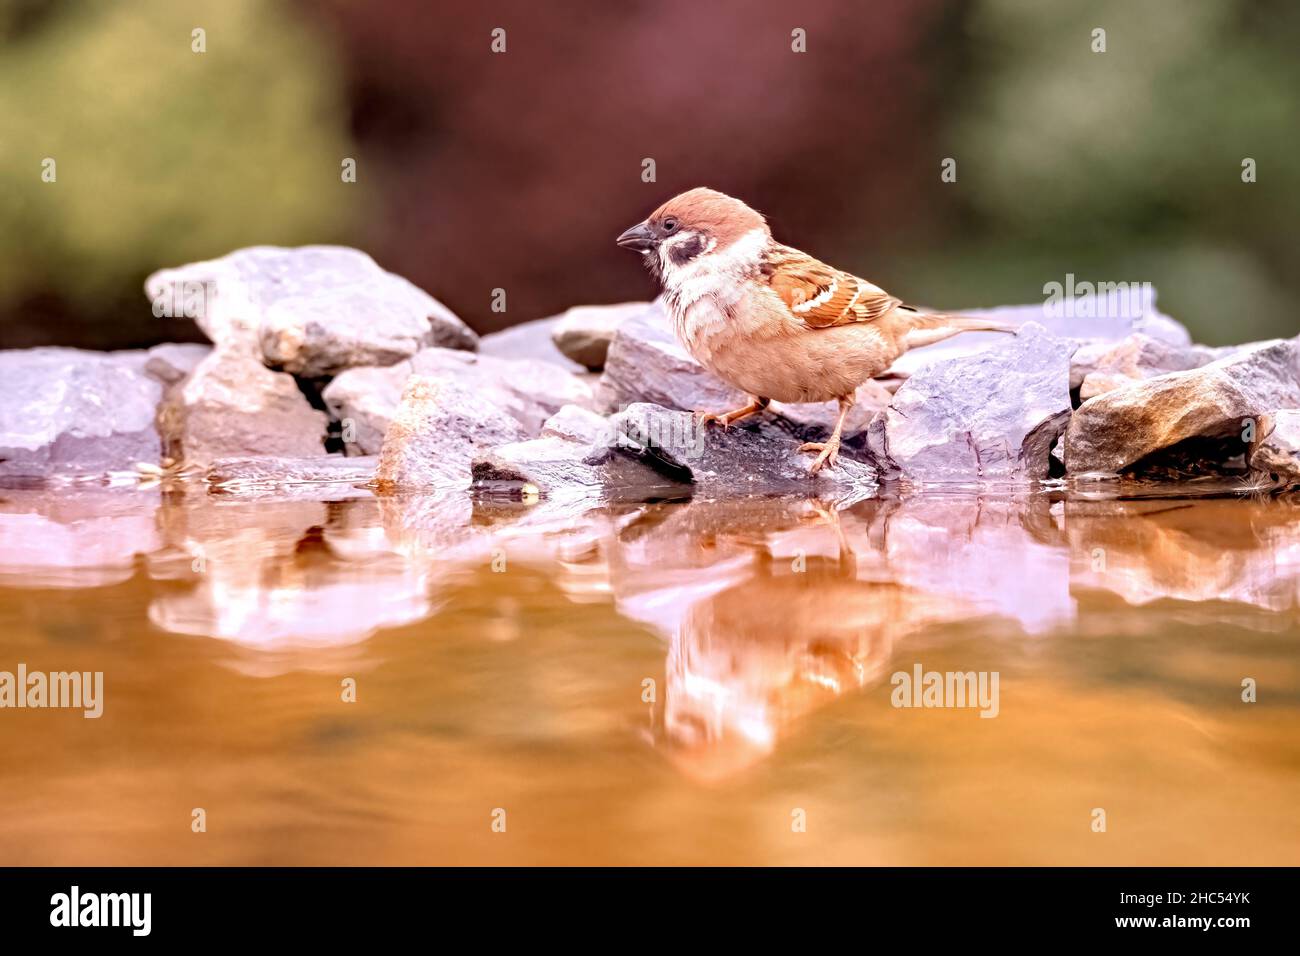 Un petit oiseau de jardin brun, le moineau d'un arbre eurasien, Passer montanus, se dresse sur des rochers au bord de la piscine Banque D'Images